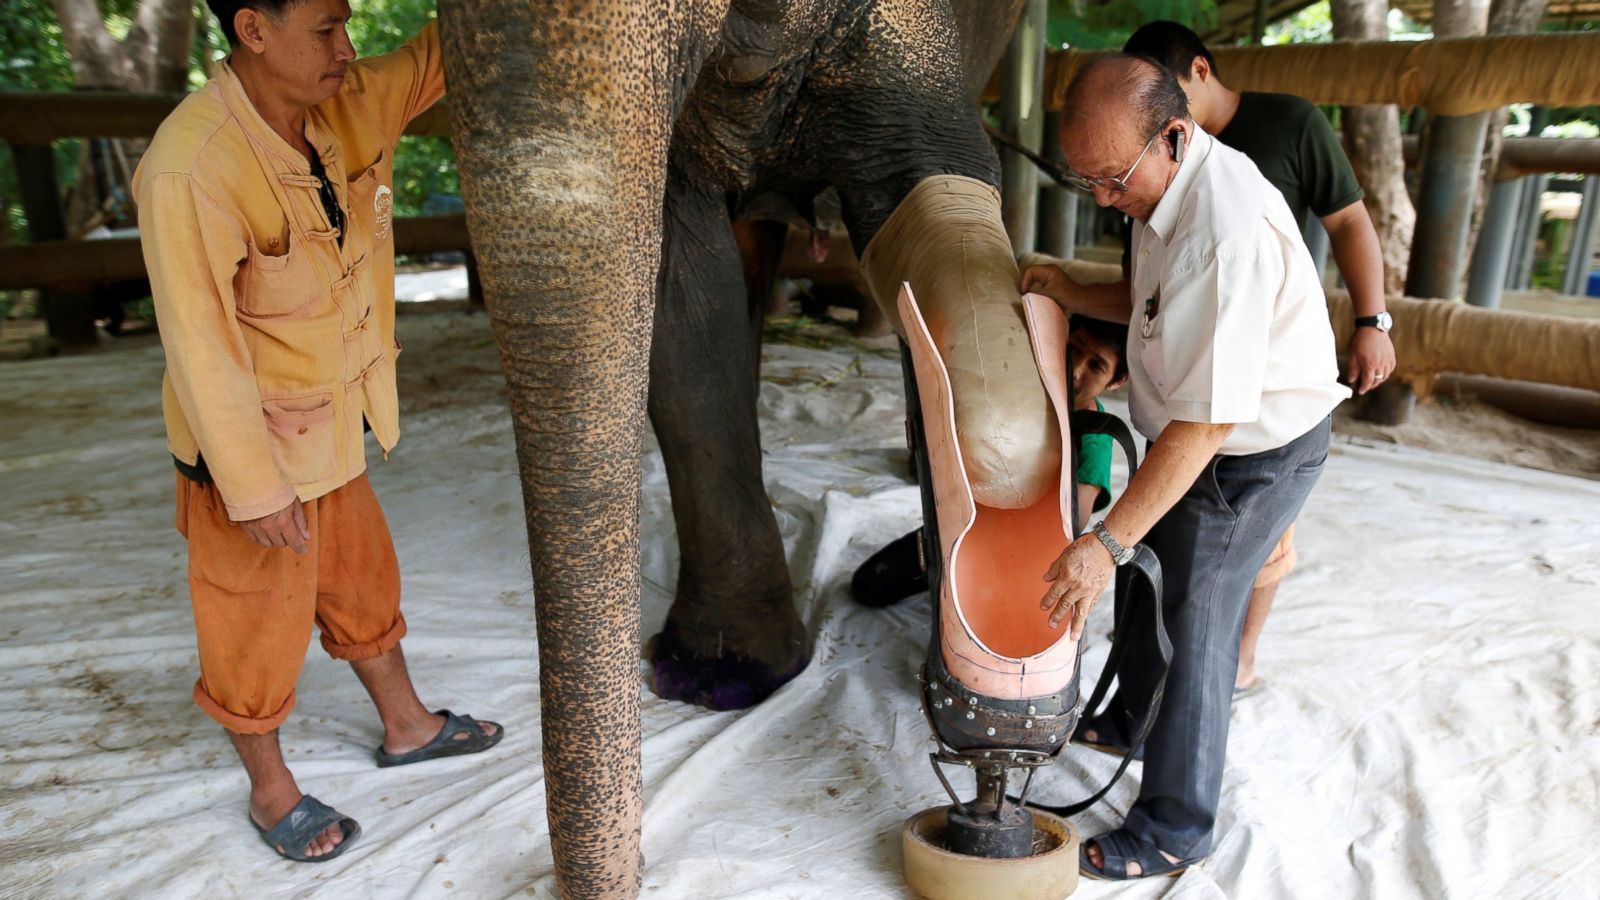 Meet Mosha, the Elephant With a Prosthetic Leg - ABC News